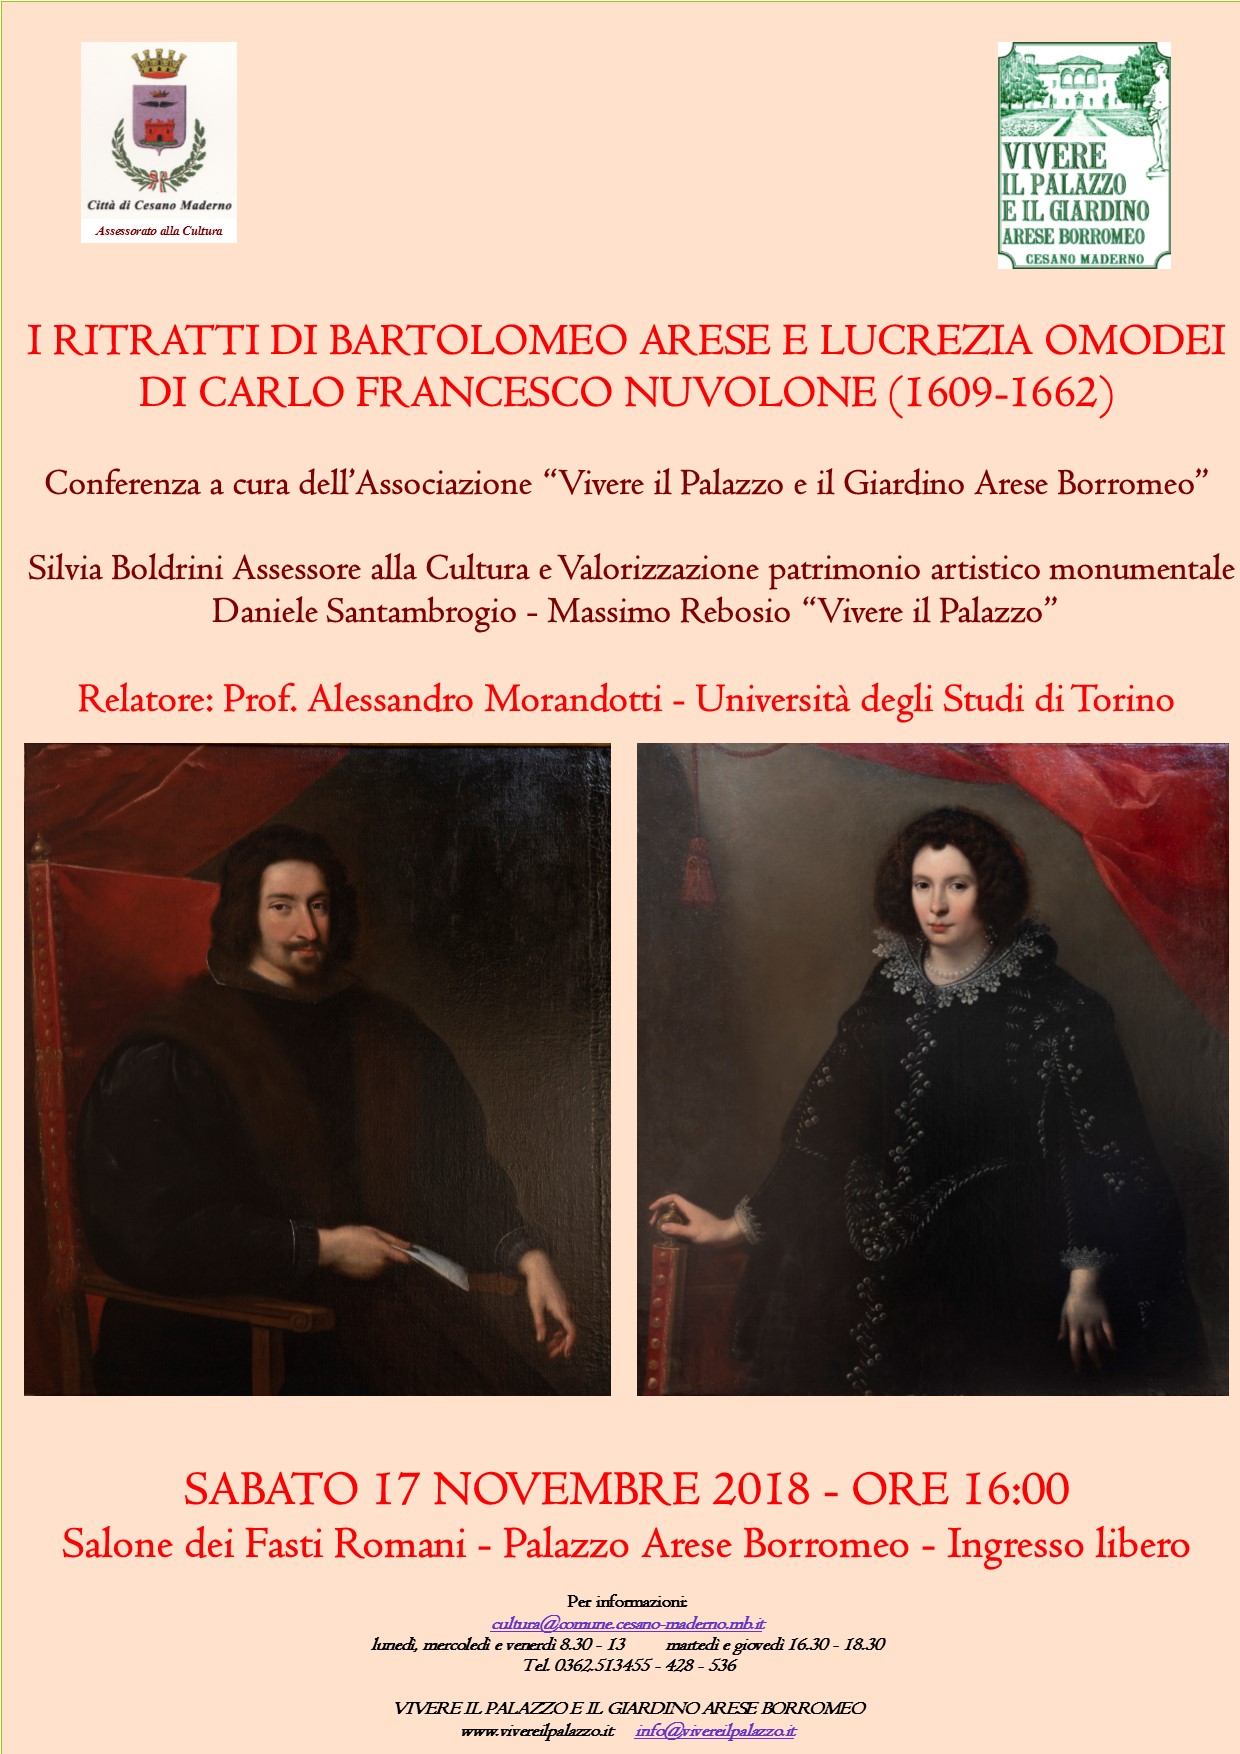 Conferenza su Carlo Francesco Nuvolone e i suoi ritratti di Bartolomeo Arese e Lucrezia Omodei